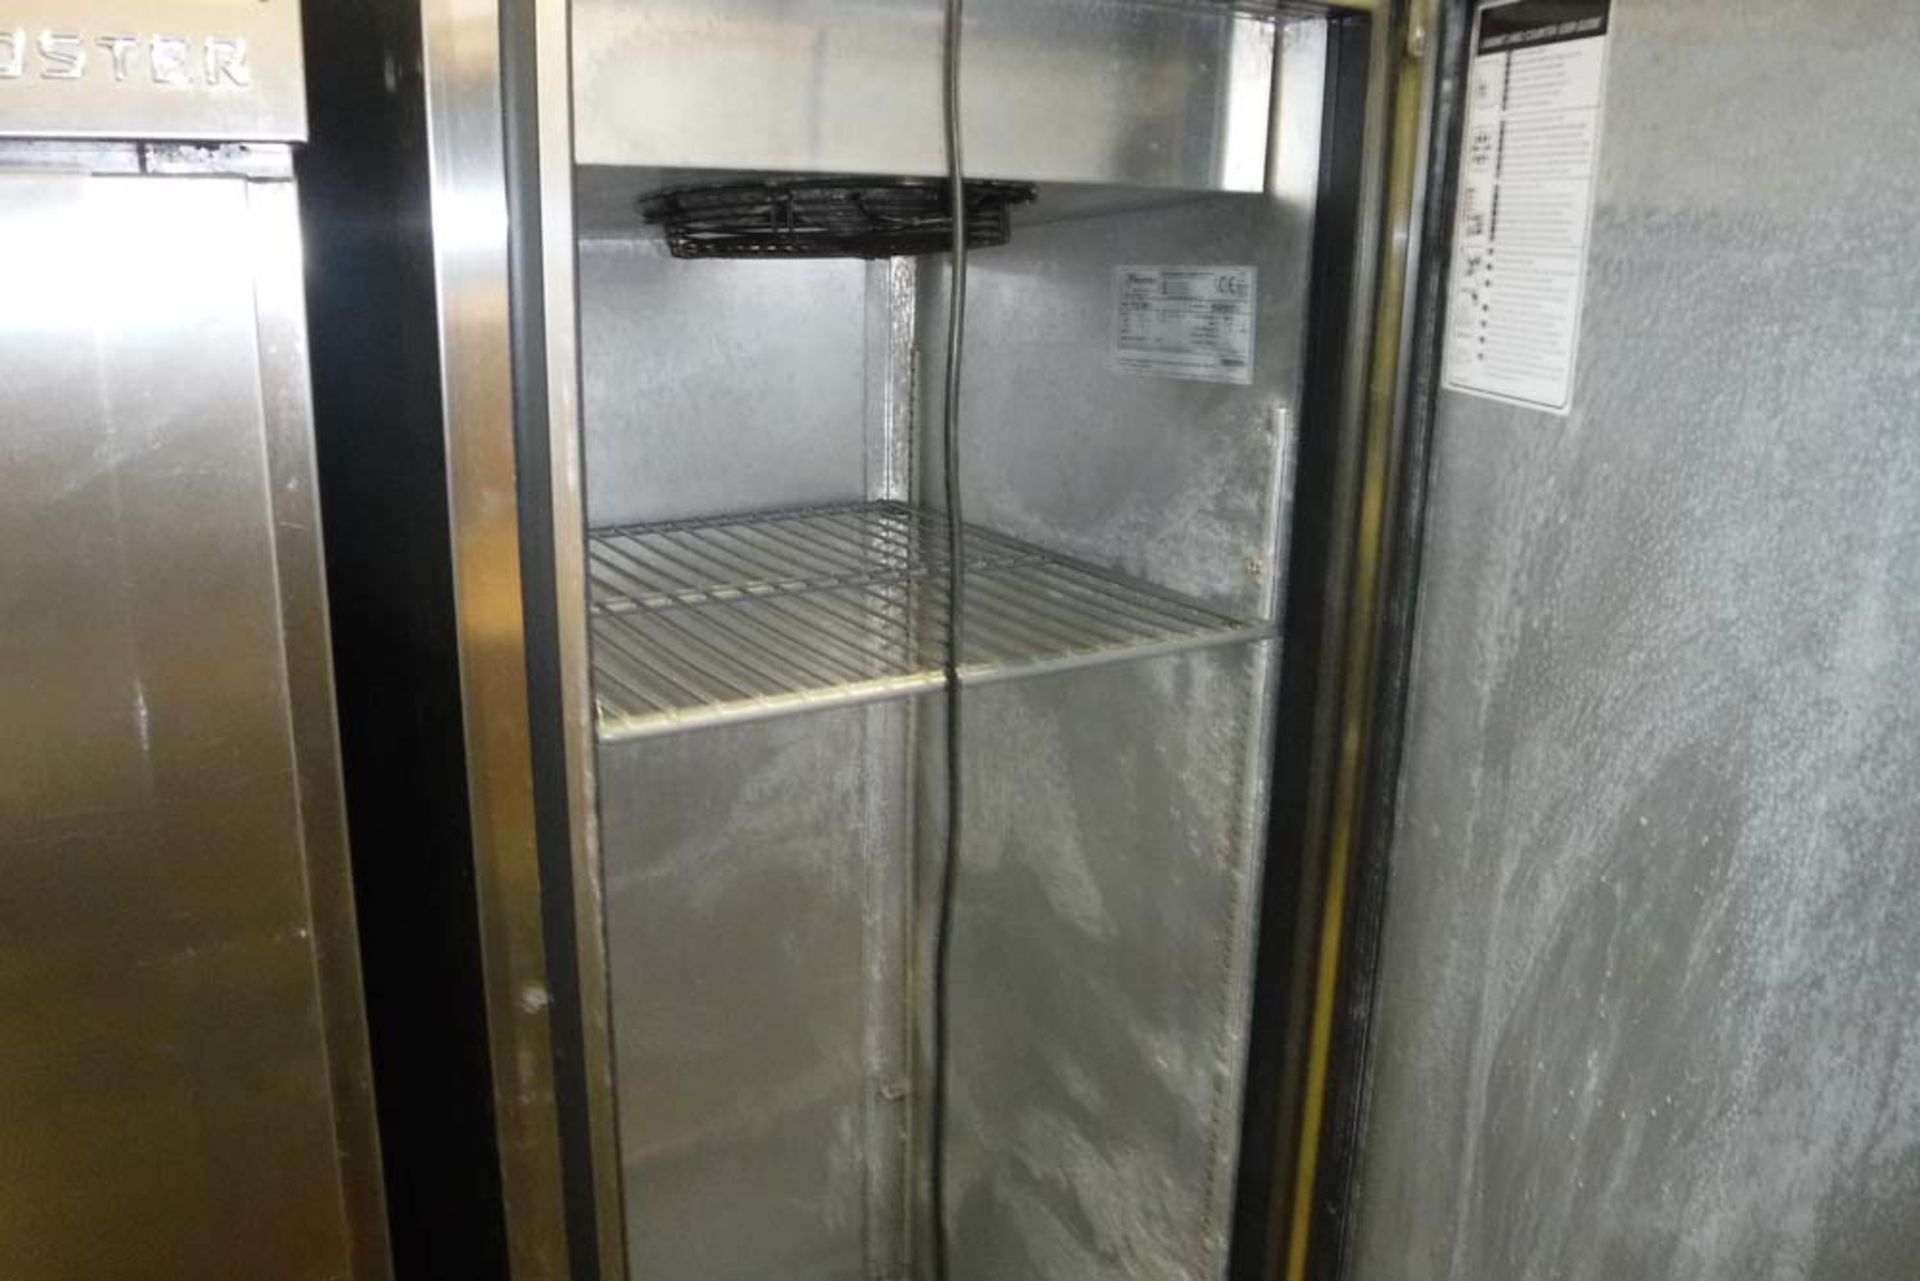 Foster FSL400L single-door fridge (104) - Image 2 of 2